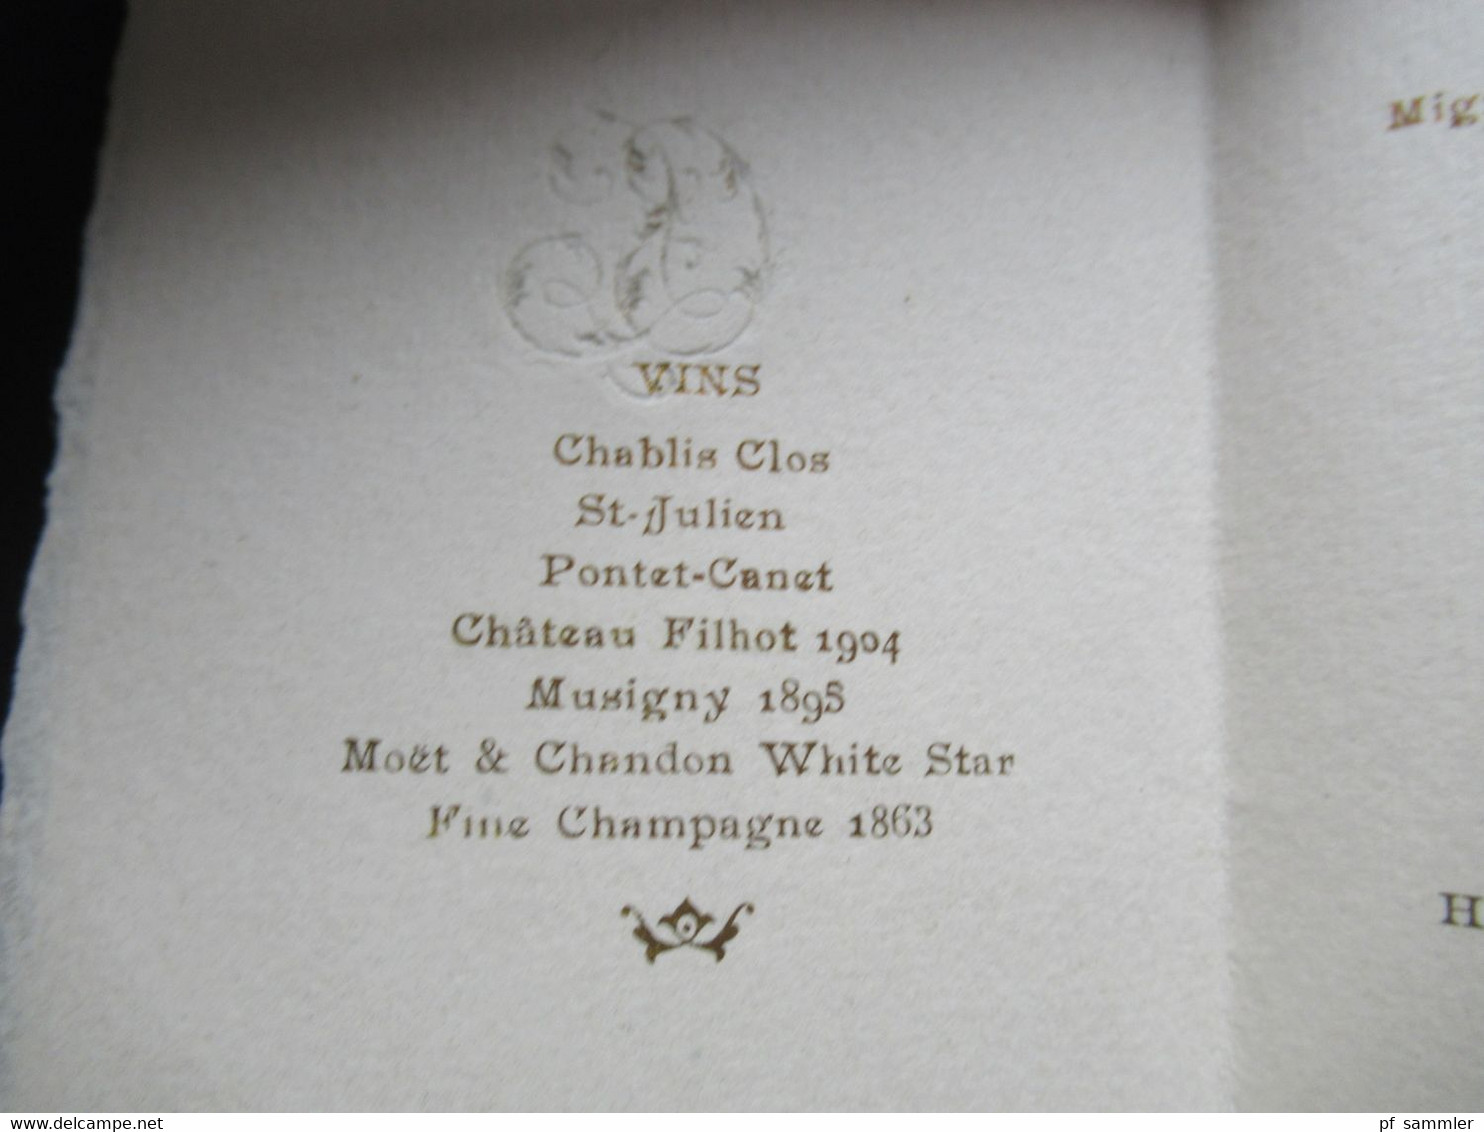 Frankreich 1863 - 1913 Einladungskarte Menu du diner Chateau de Madrid Spreisekarte / Weinkarte Moet & Chandon 1863